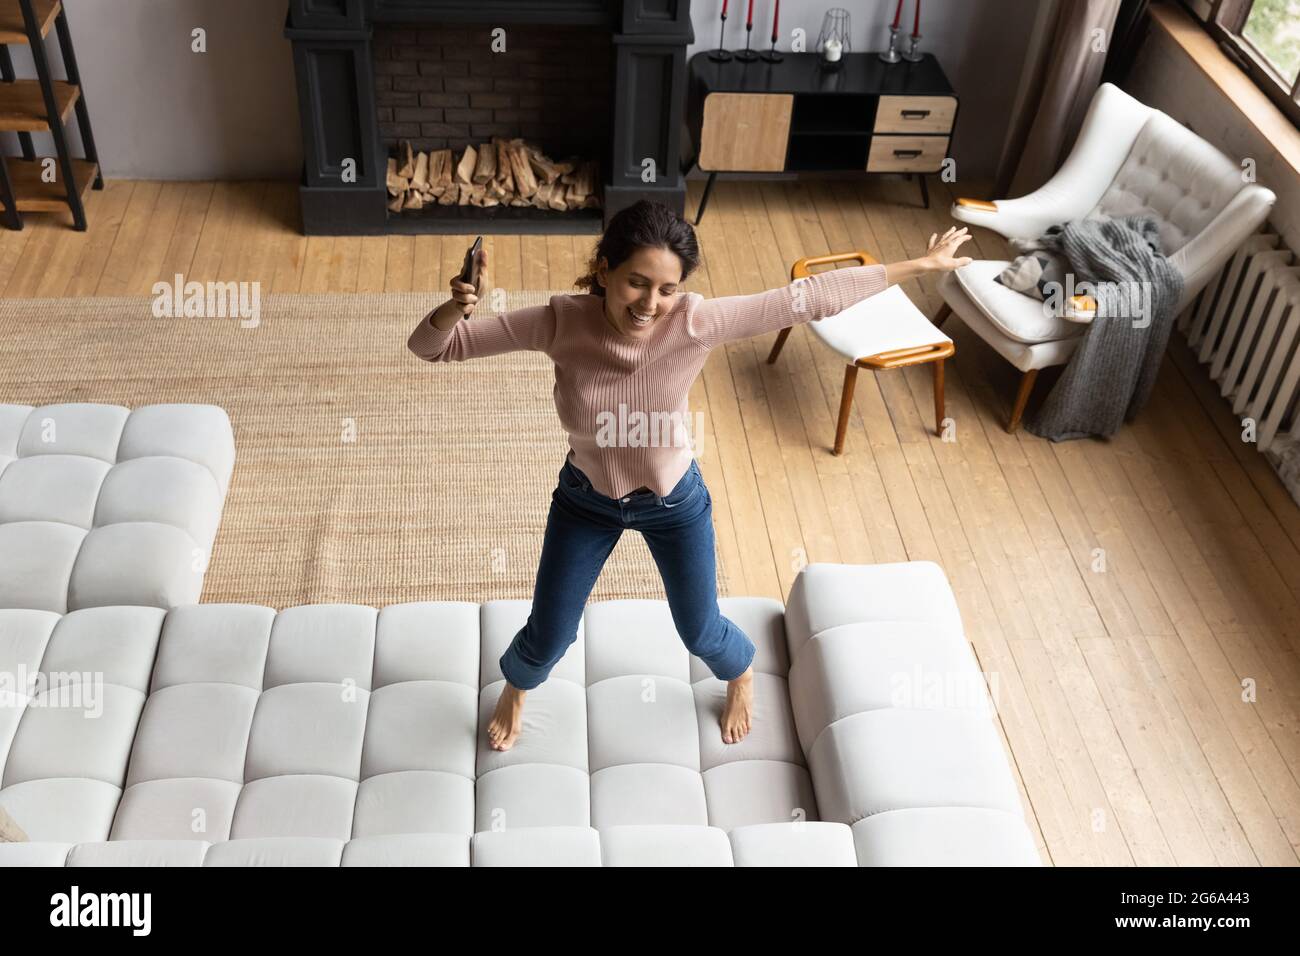 Emotional energetic young hispanic woman dancing on sofa. Stock Photo